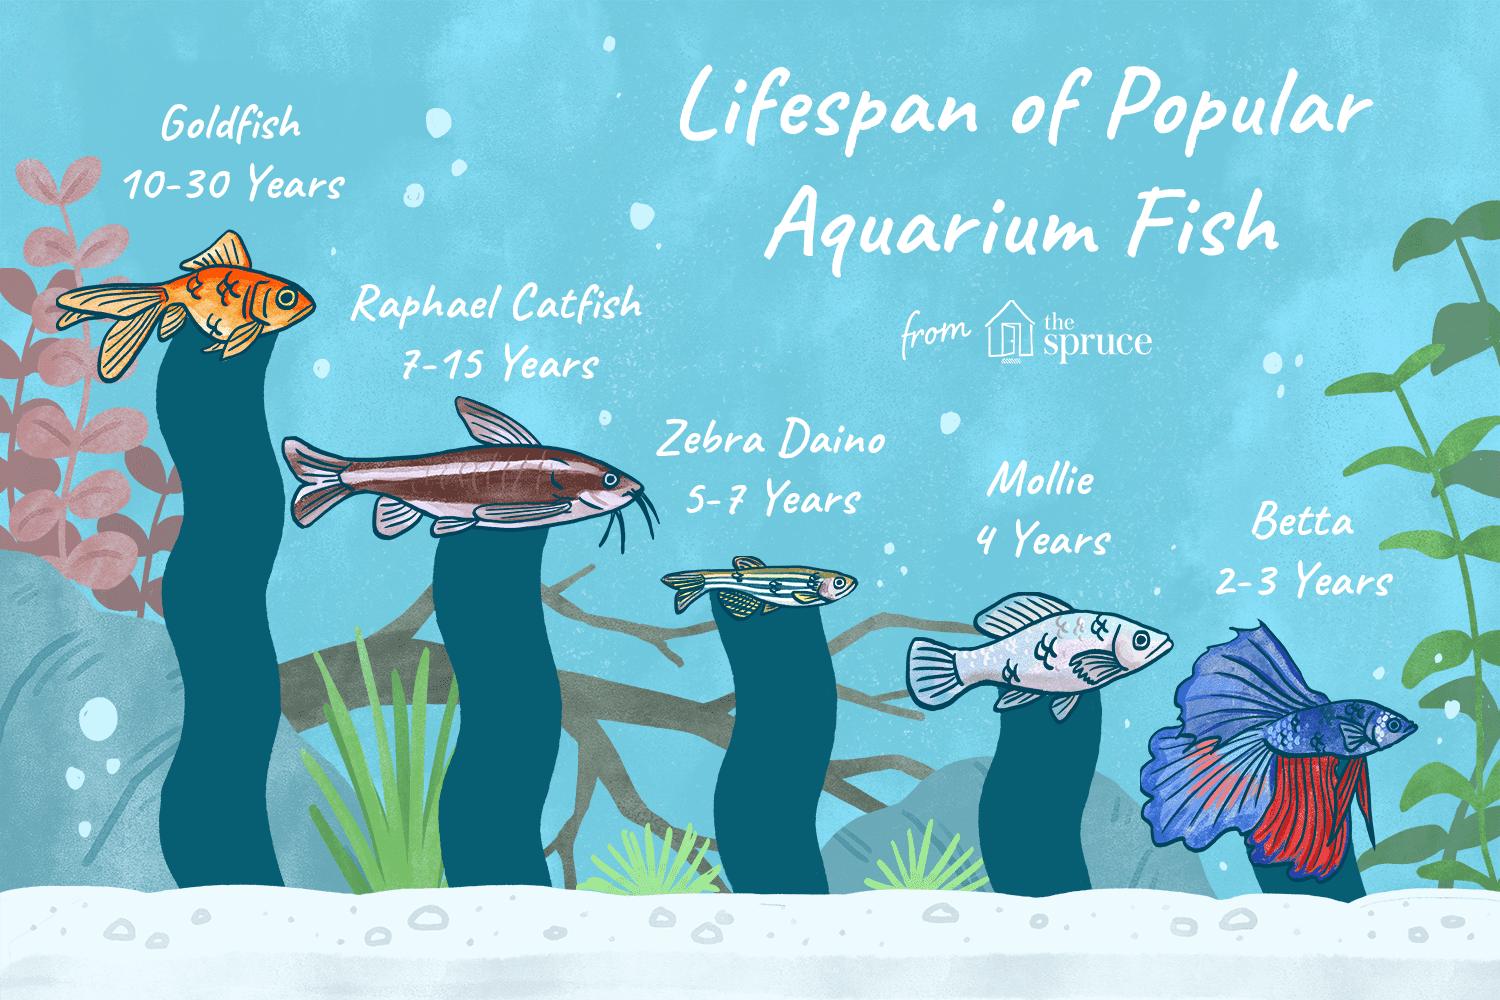 Diferentes esperanzas de vida de los peces según las especies y las condiciones del acuario